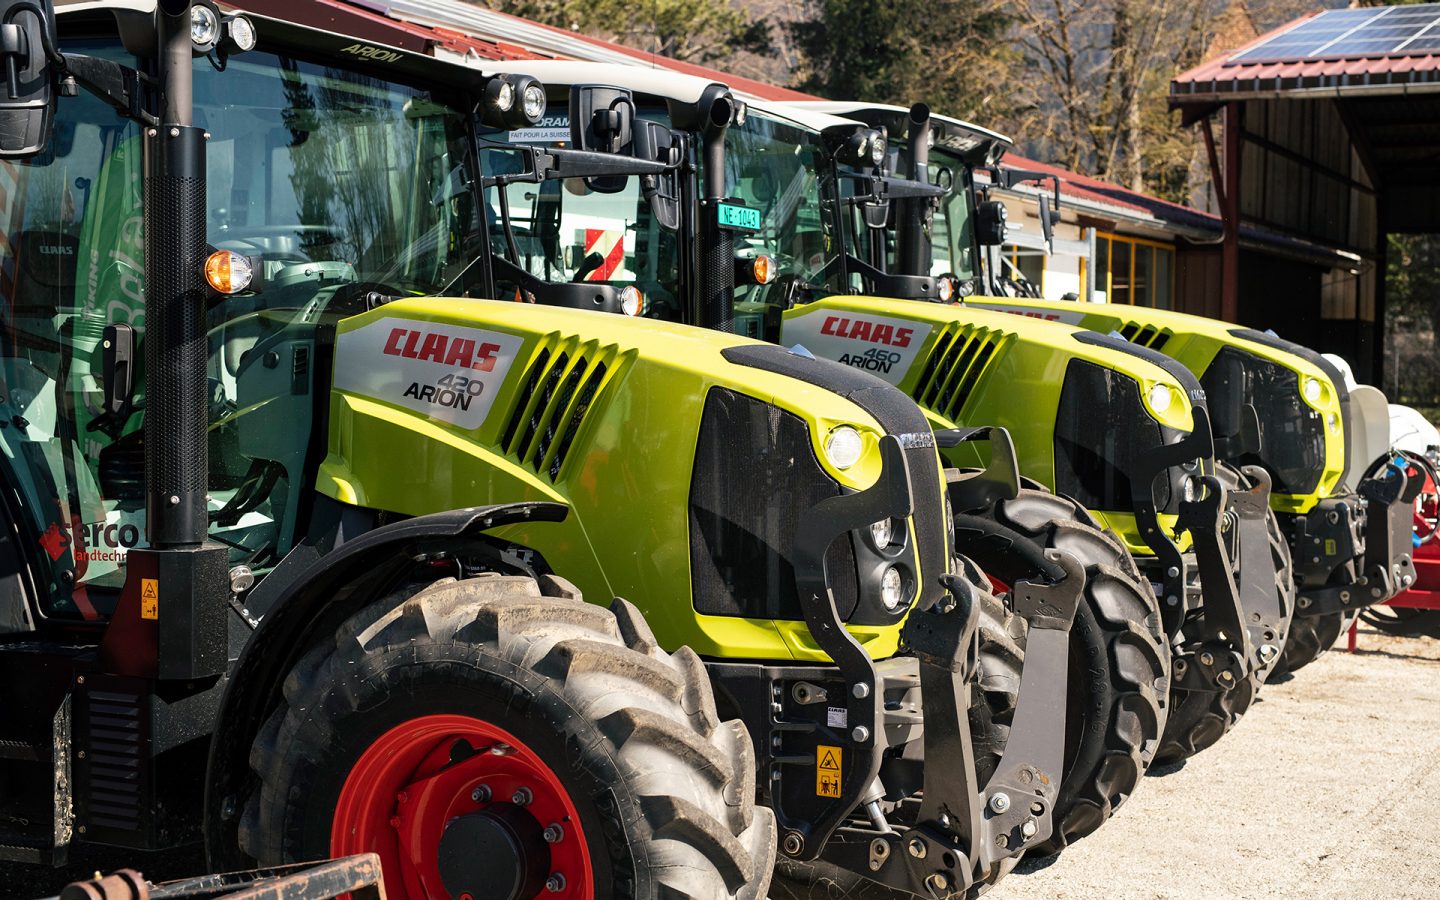 La Jeanneret Hydro Mécanique vende e ripara trattori e altre macchine agricole. Per gli agricoltori della Val de Travers, nel Canton Neuchâtel, l'azienda è un colpo di fortuna.